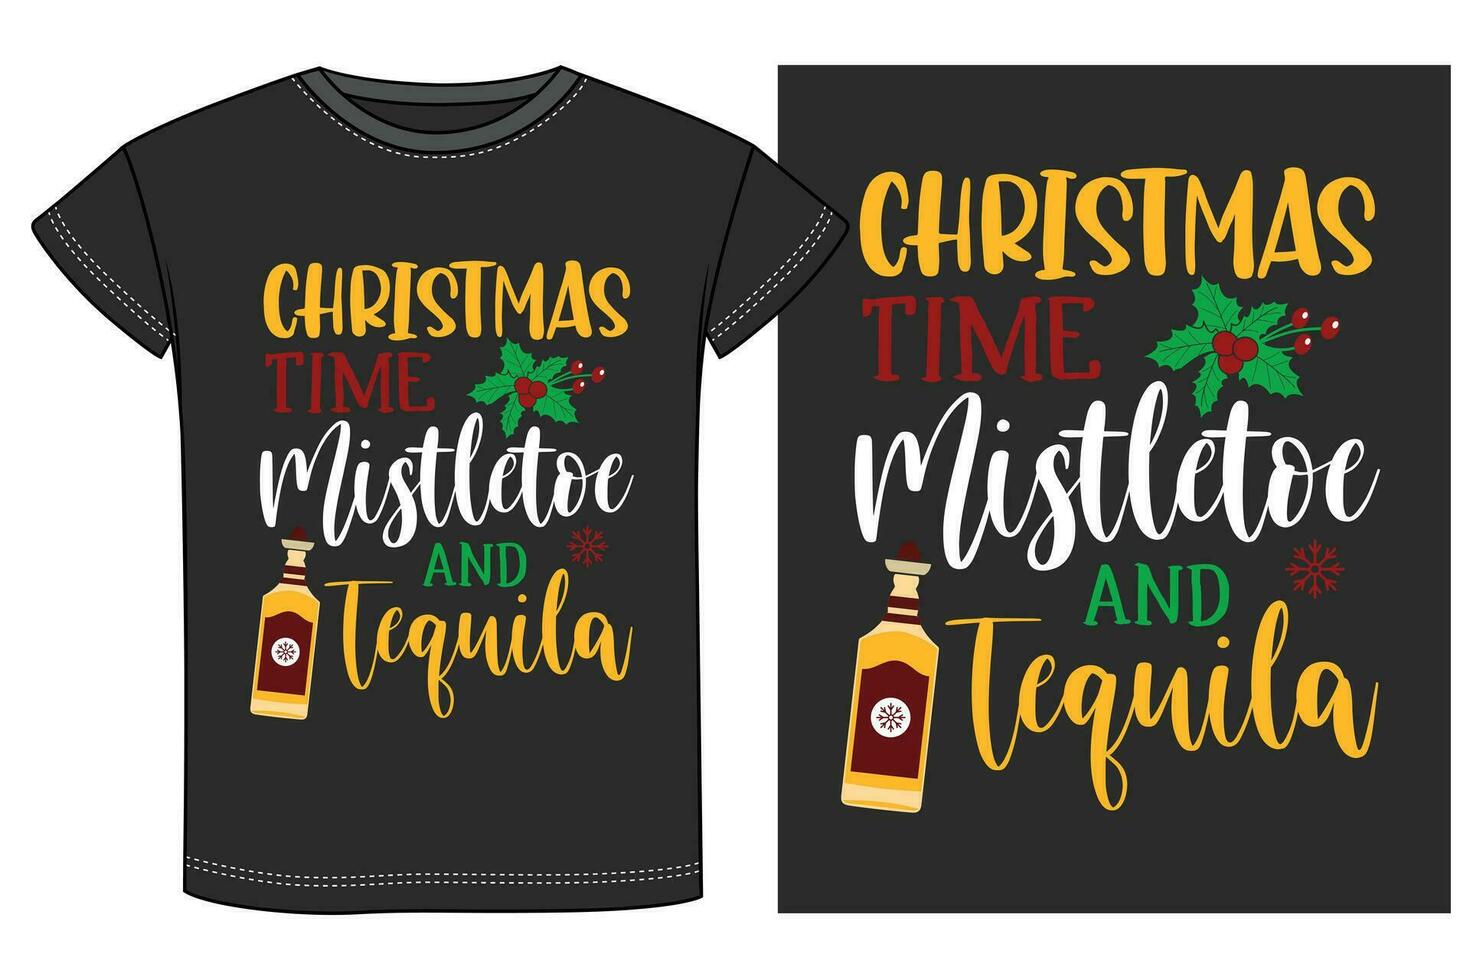 Kerstmis drinken partij t-shirt ontwerp vector